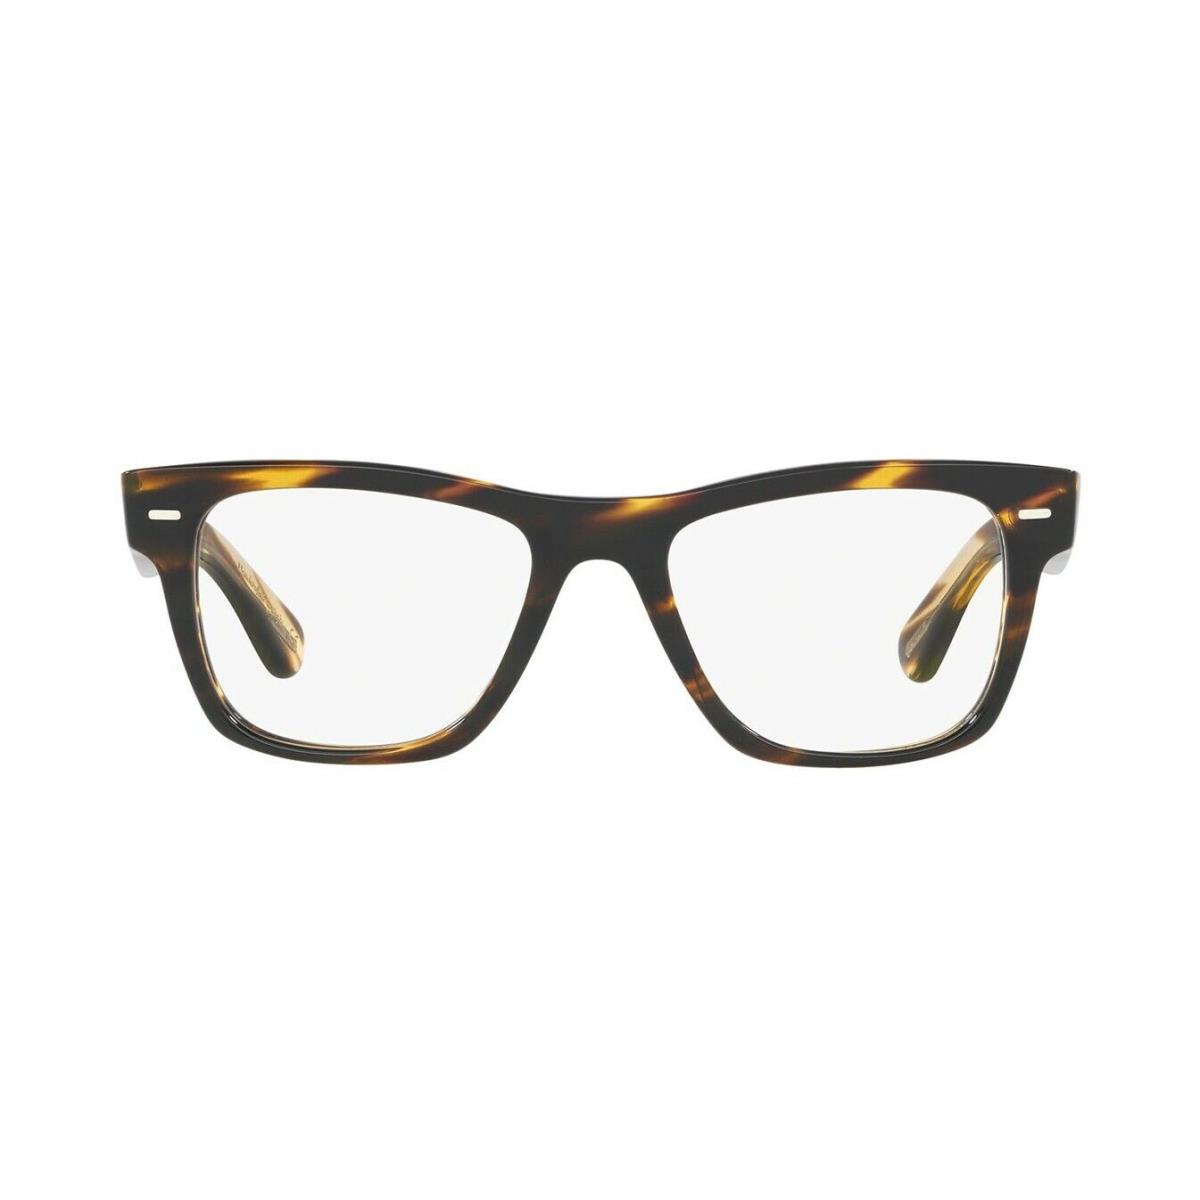 Oliver Peoples eyeglasses  - Cocobolo Frame 0